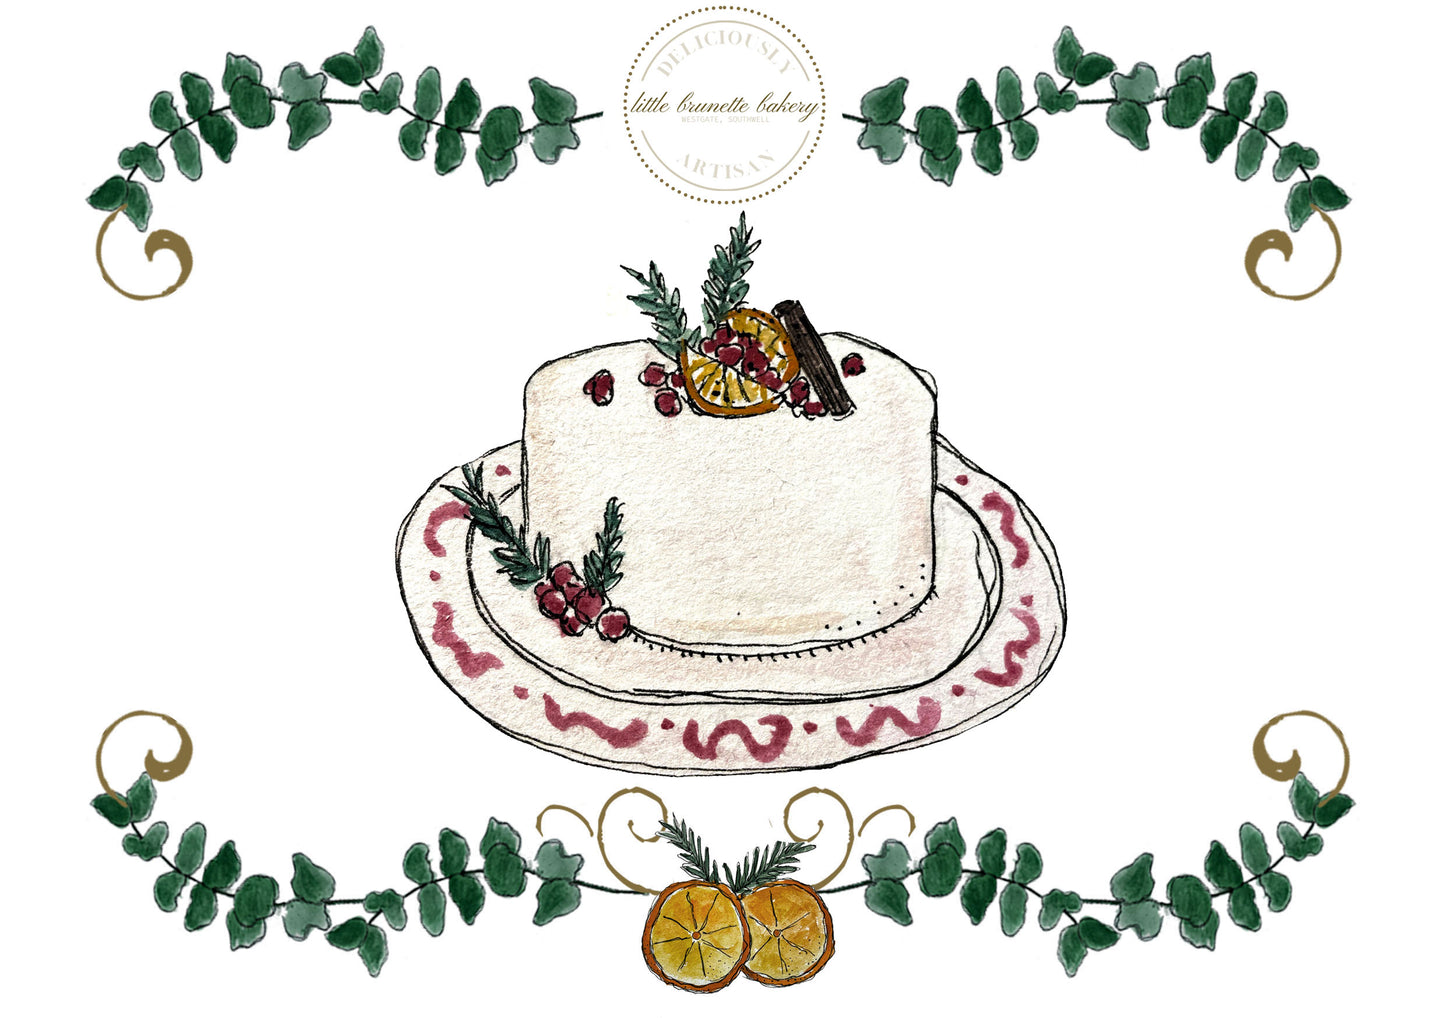 Little Brunette Bakery 8" Classic Christmas Cake